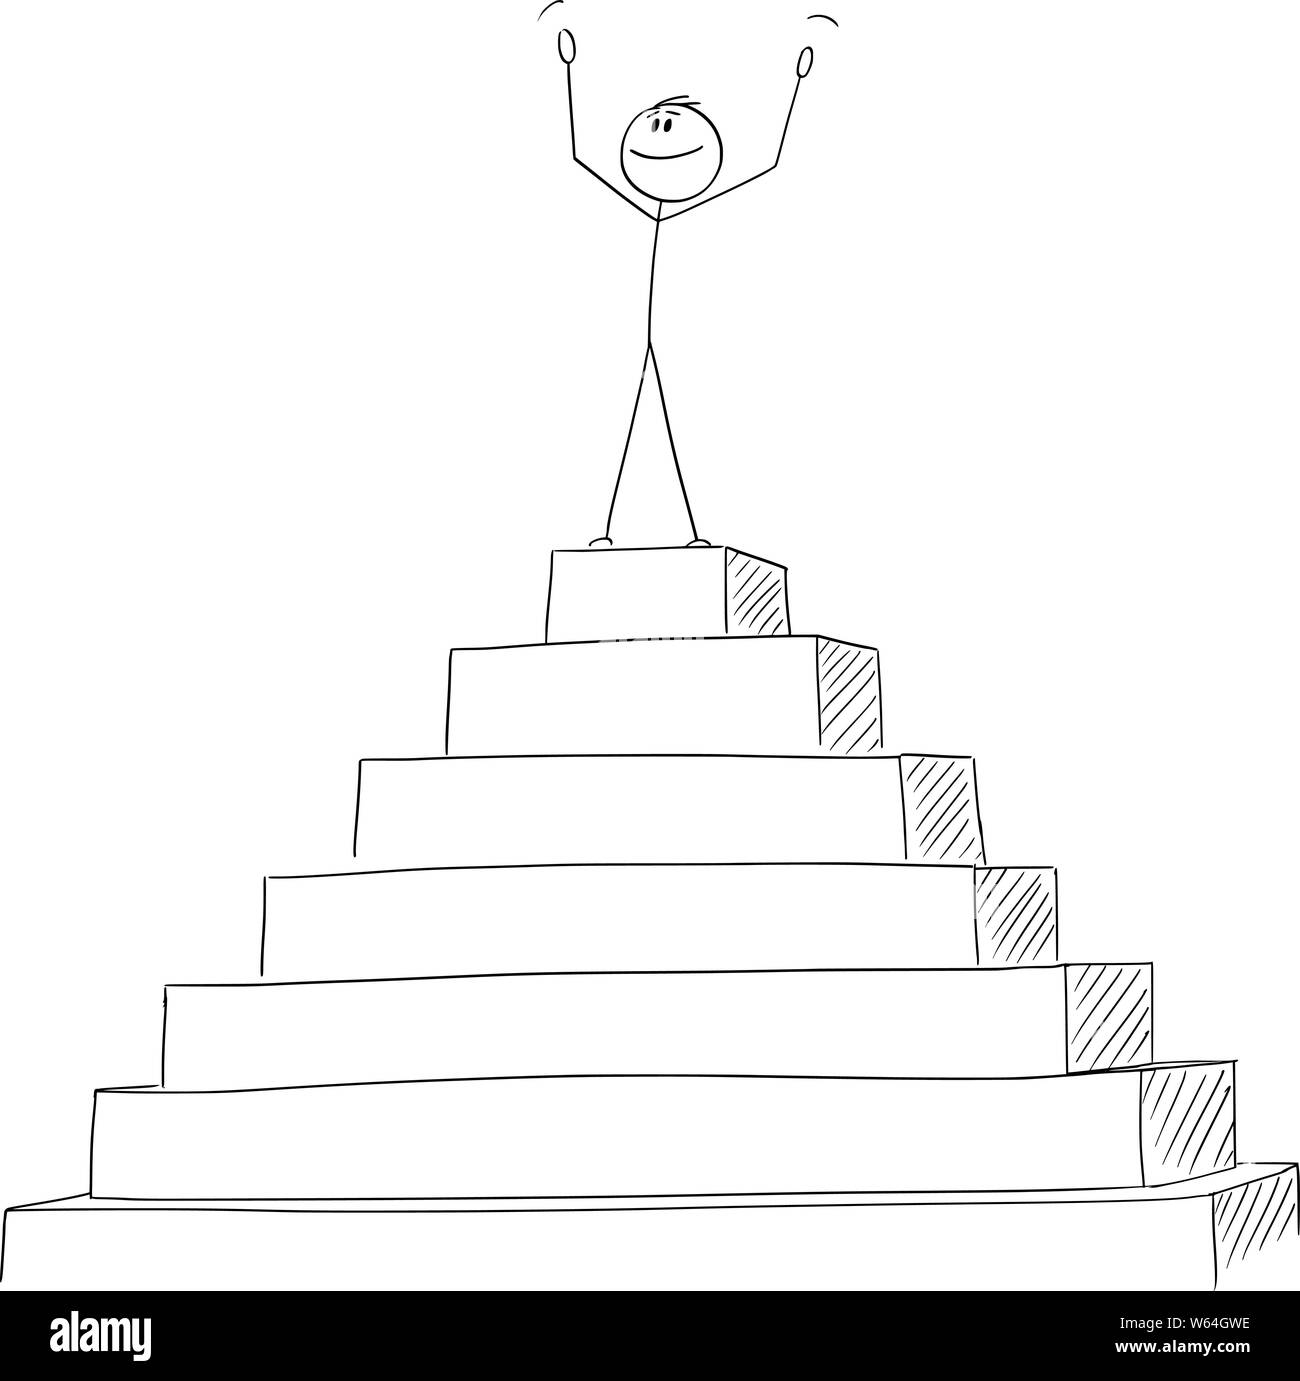 Vektor cartoon Strichmännchen Zeichnen konzeptionelle Darstellung der erfolgreichen Mann oder Geschäftsmann feiern Sieg auf der Spitze der Pyramide. Business Konzept der Erfolg. Stock Vektor